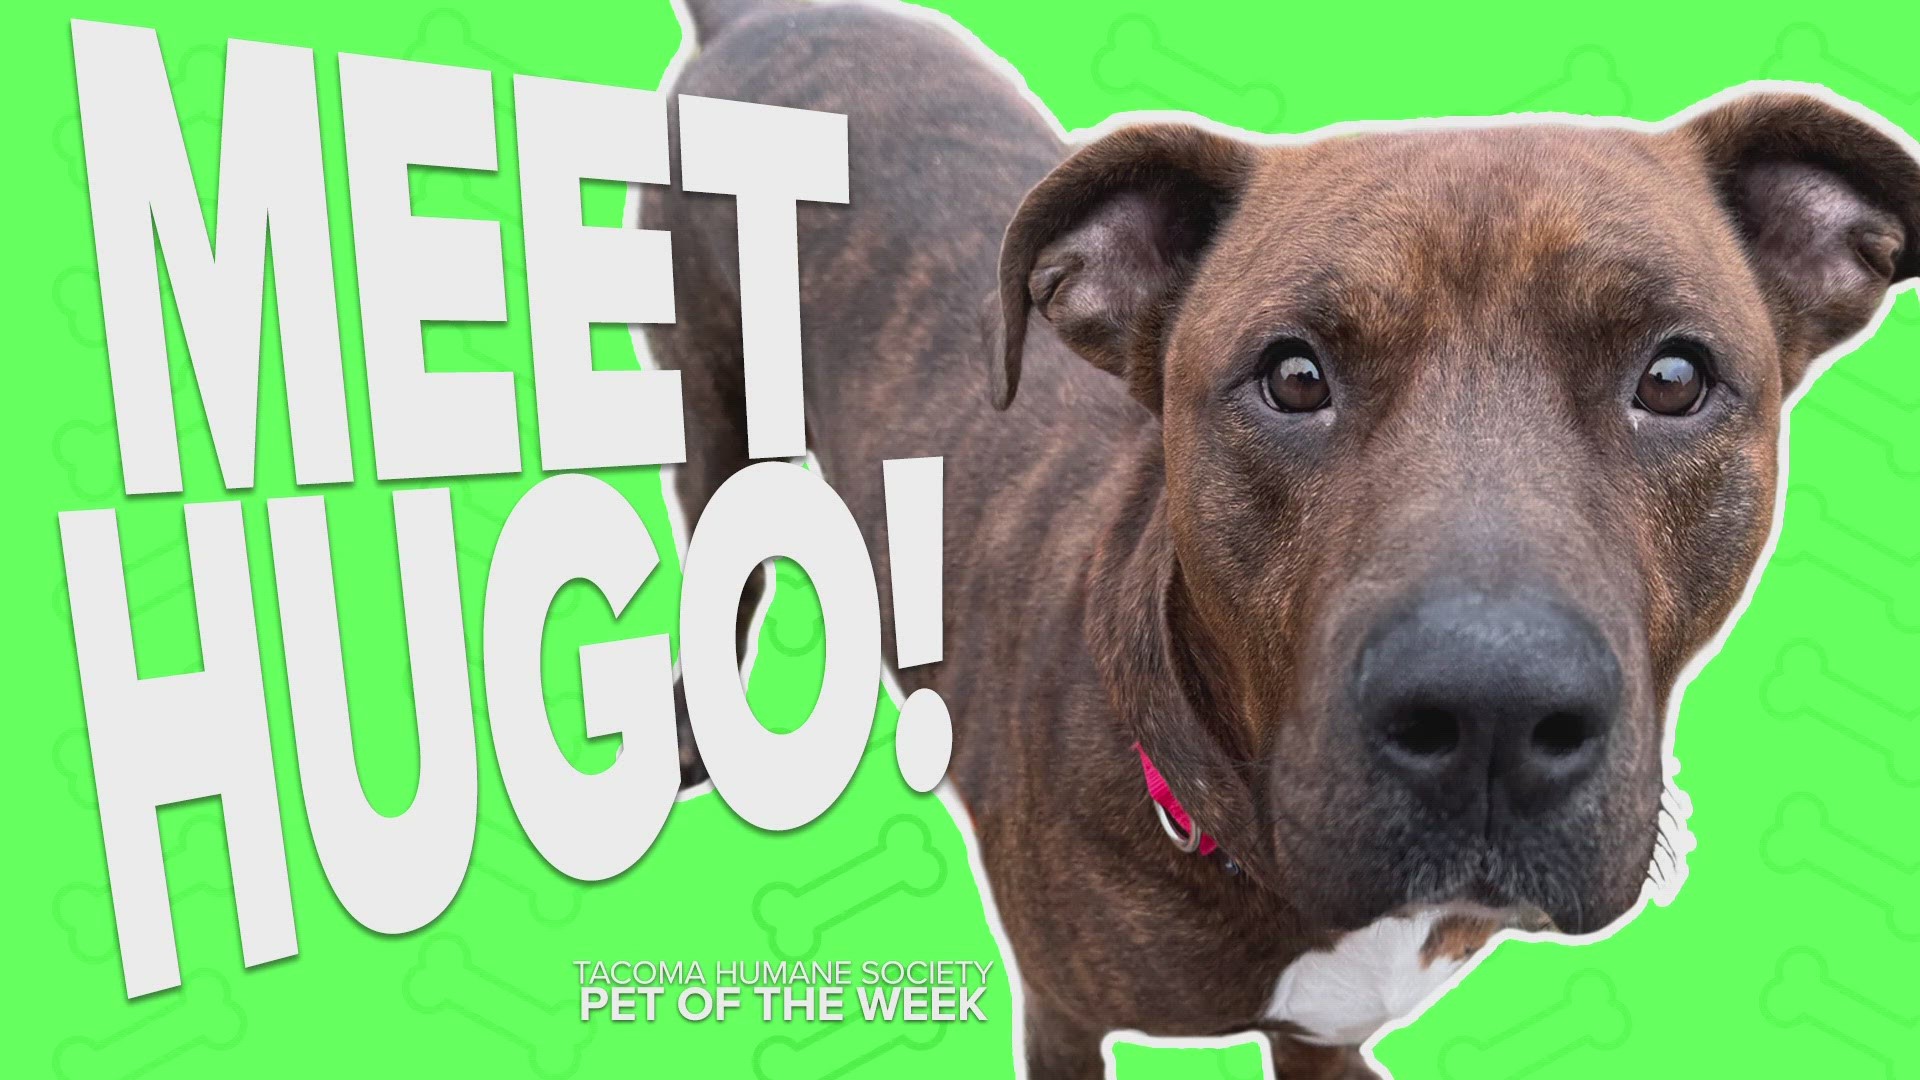 This week's adoptable pet is Hugo!